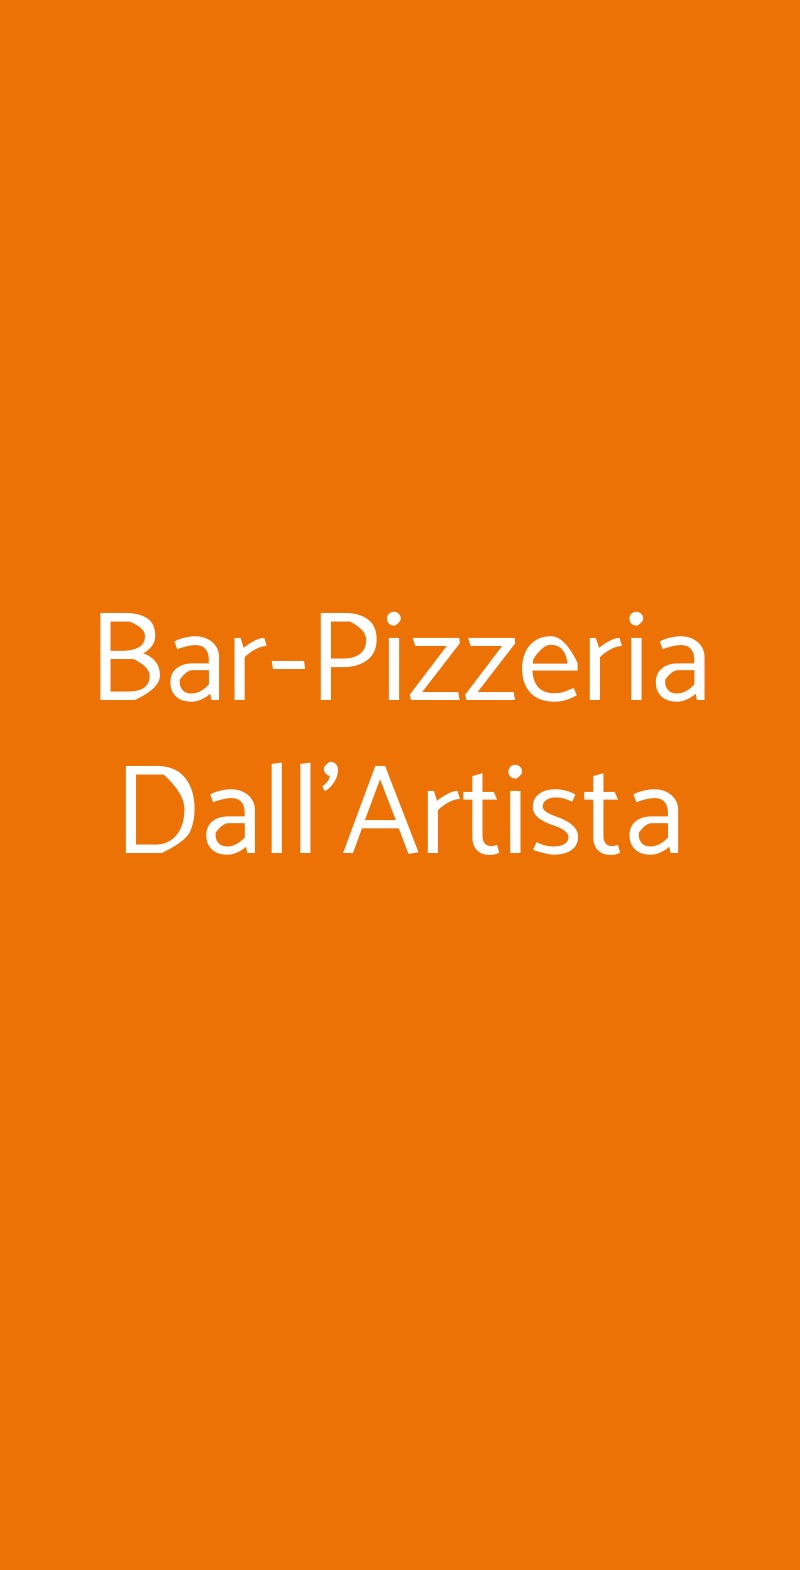 Bar-Pizzeria Dall'Artista Jerago con Orago menù 1 pagina